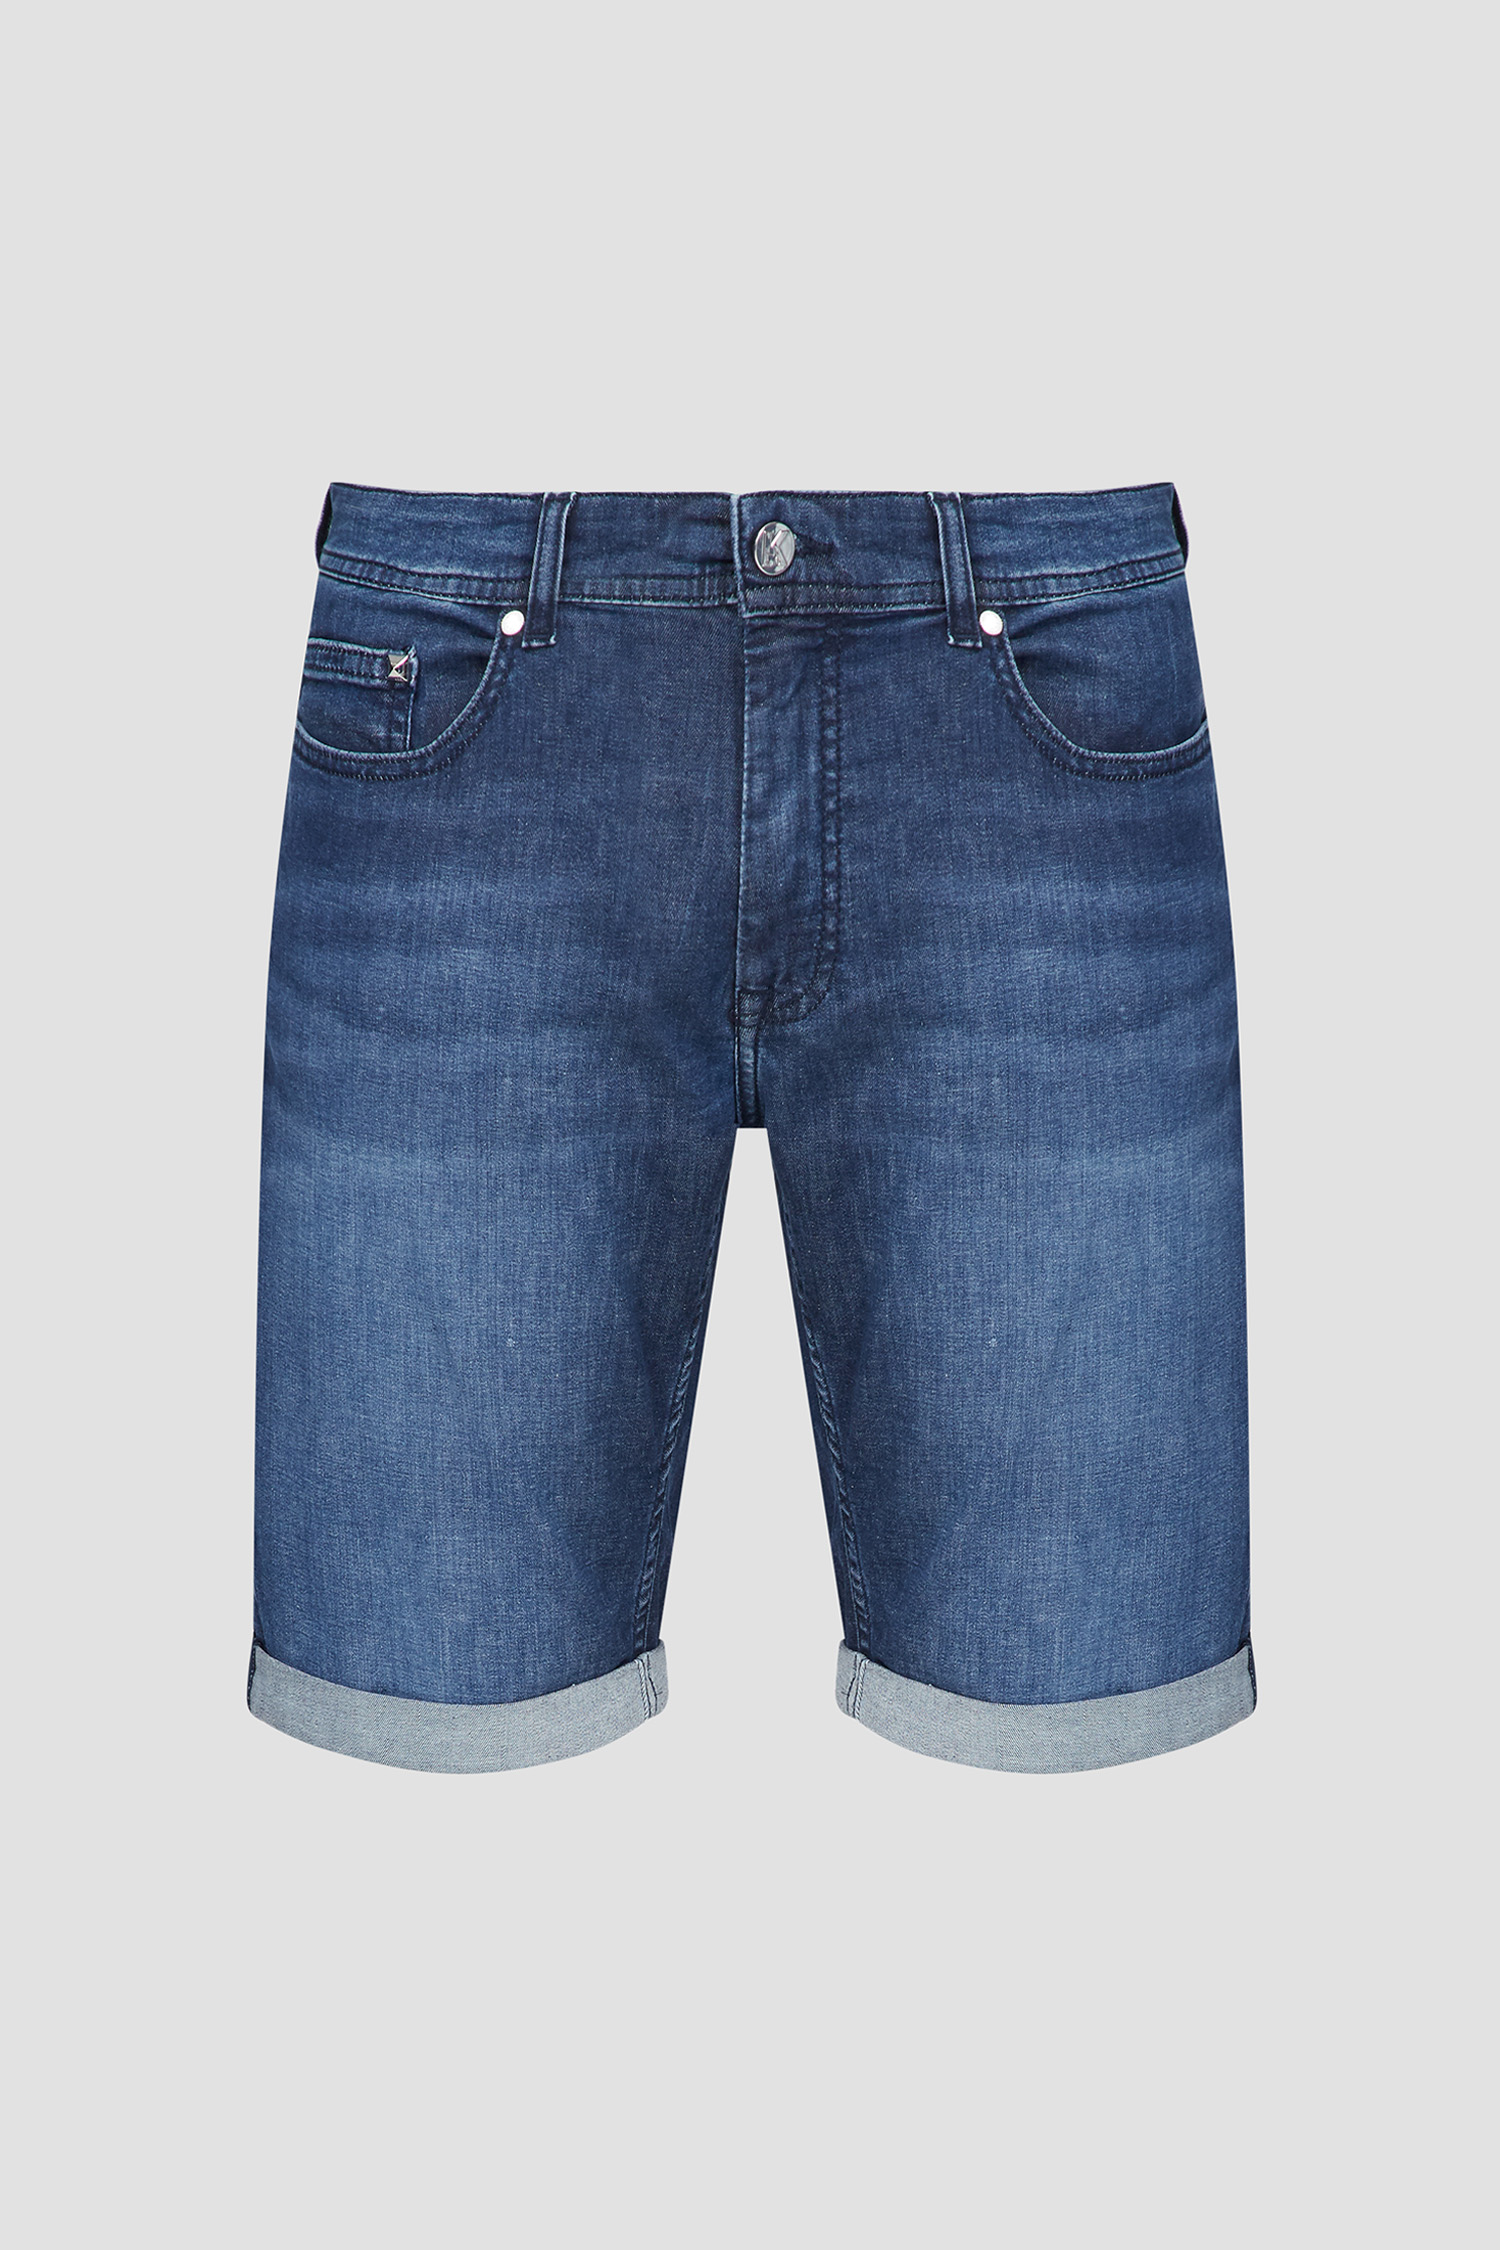 Чоловічі сині джинсові шорти Karl Lagerfeld 532833.265820;670